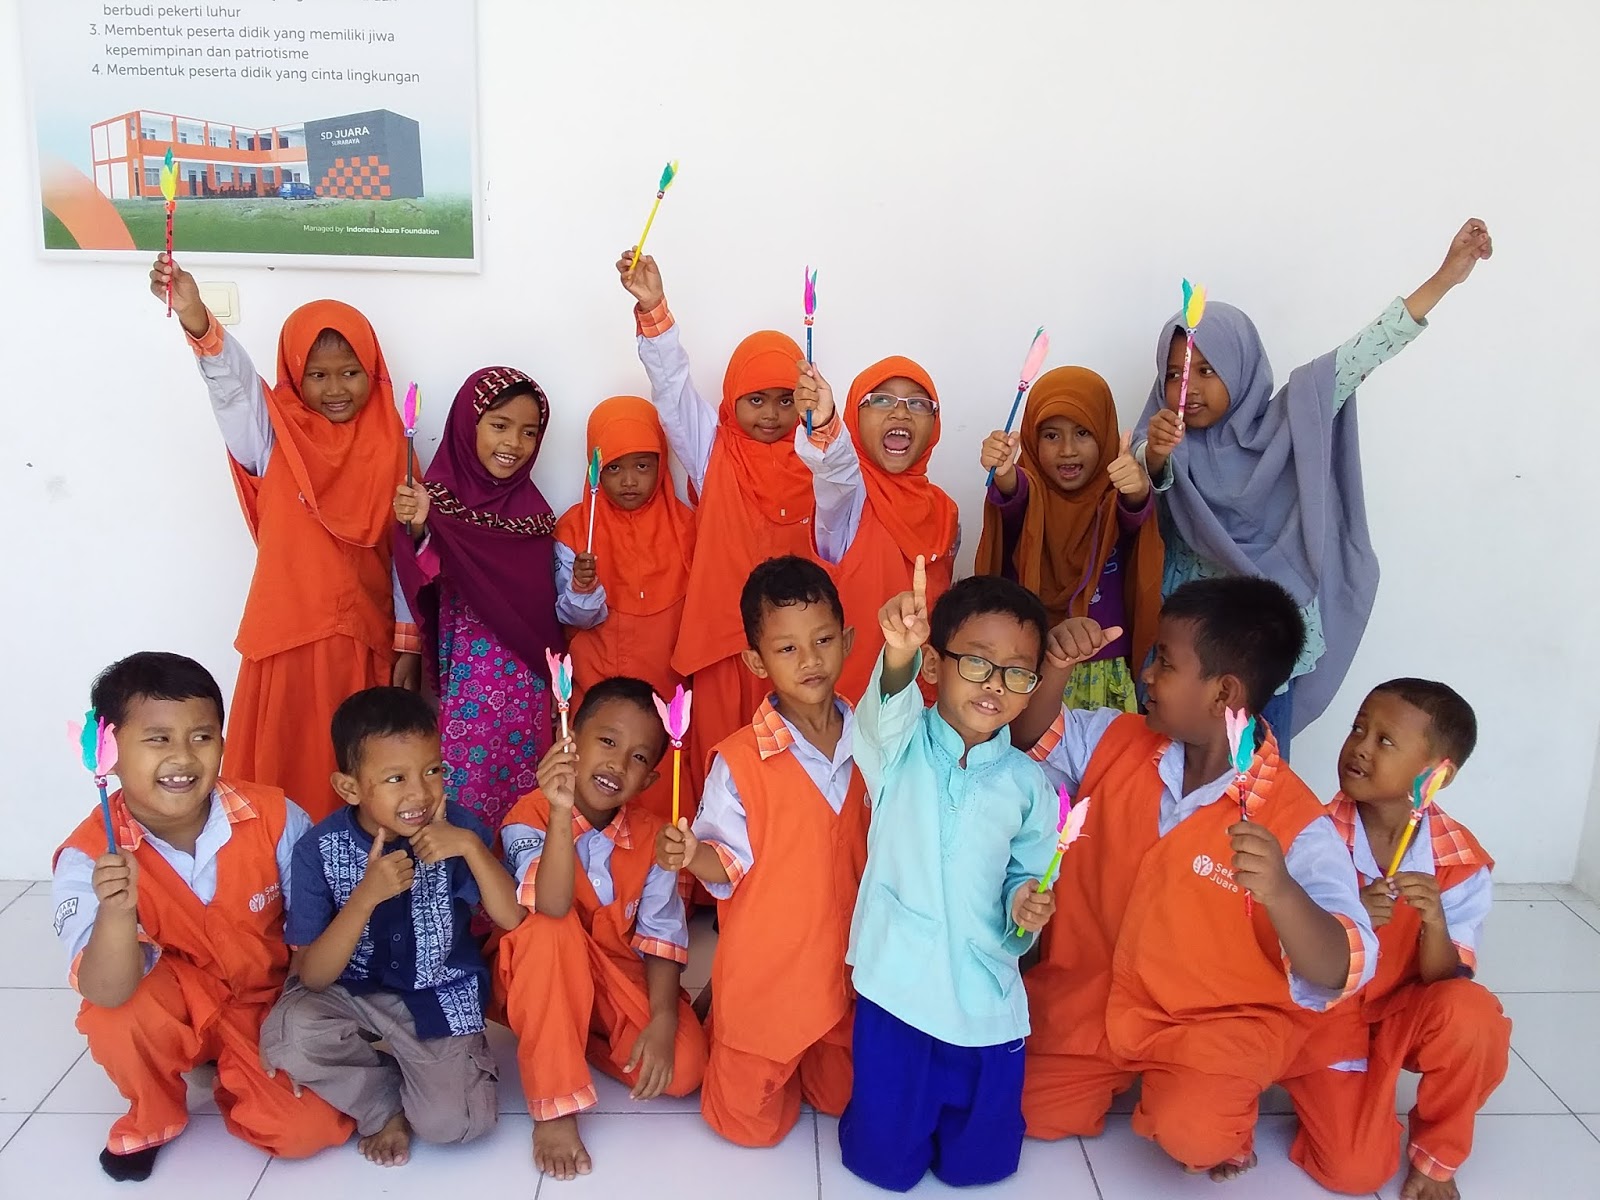 Kamis 28 2 anak anak kelas 1 SD Juara Surabaya membuat kreasi yang unik mempraktrekkan apa yang sudah ada di buku tema 6 kreasi ini adalah "Pensil Hias